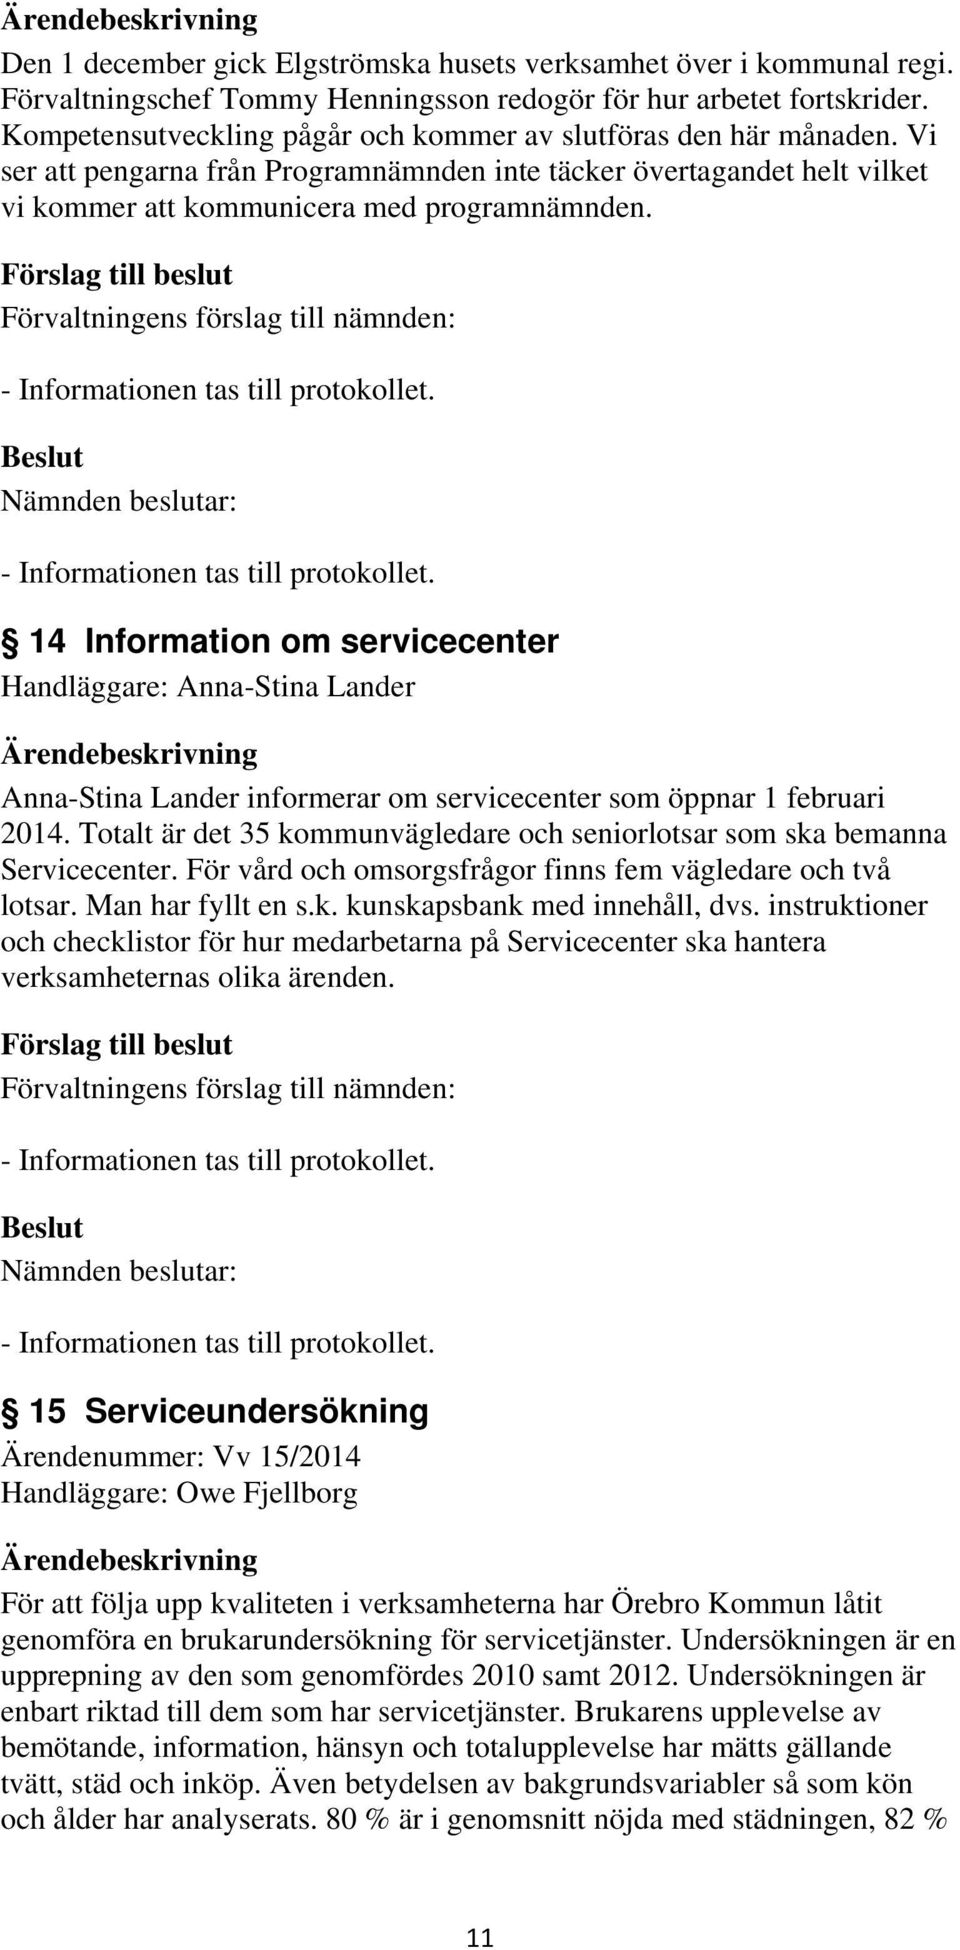 14 Information om servicecenter Handläggare: Anna-Stina Lander Anna-Stina Lander informerar om servicecenter som öppnar 1 februari 2014.